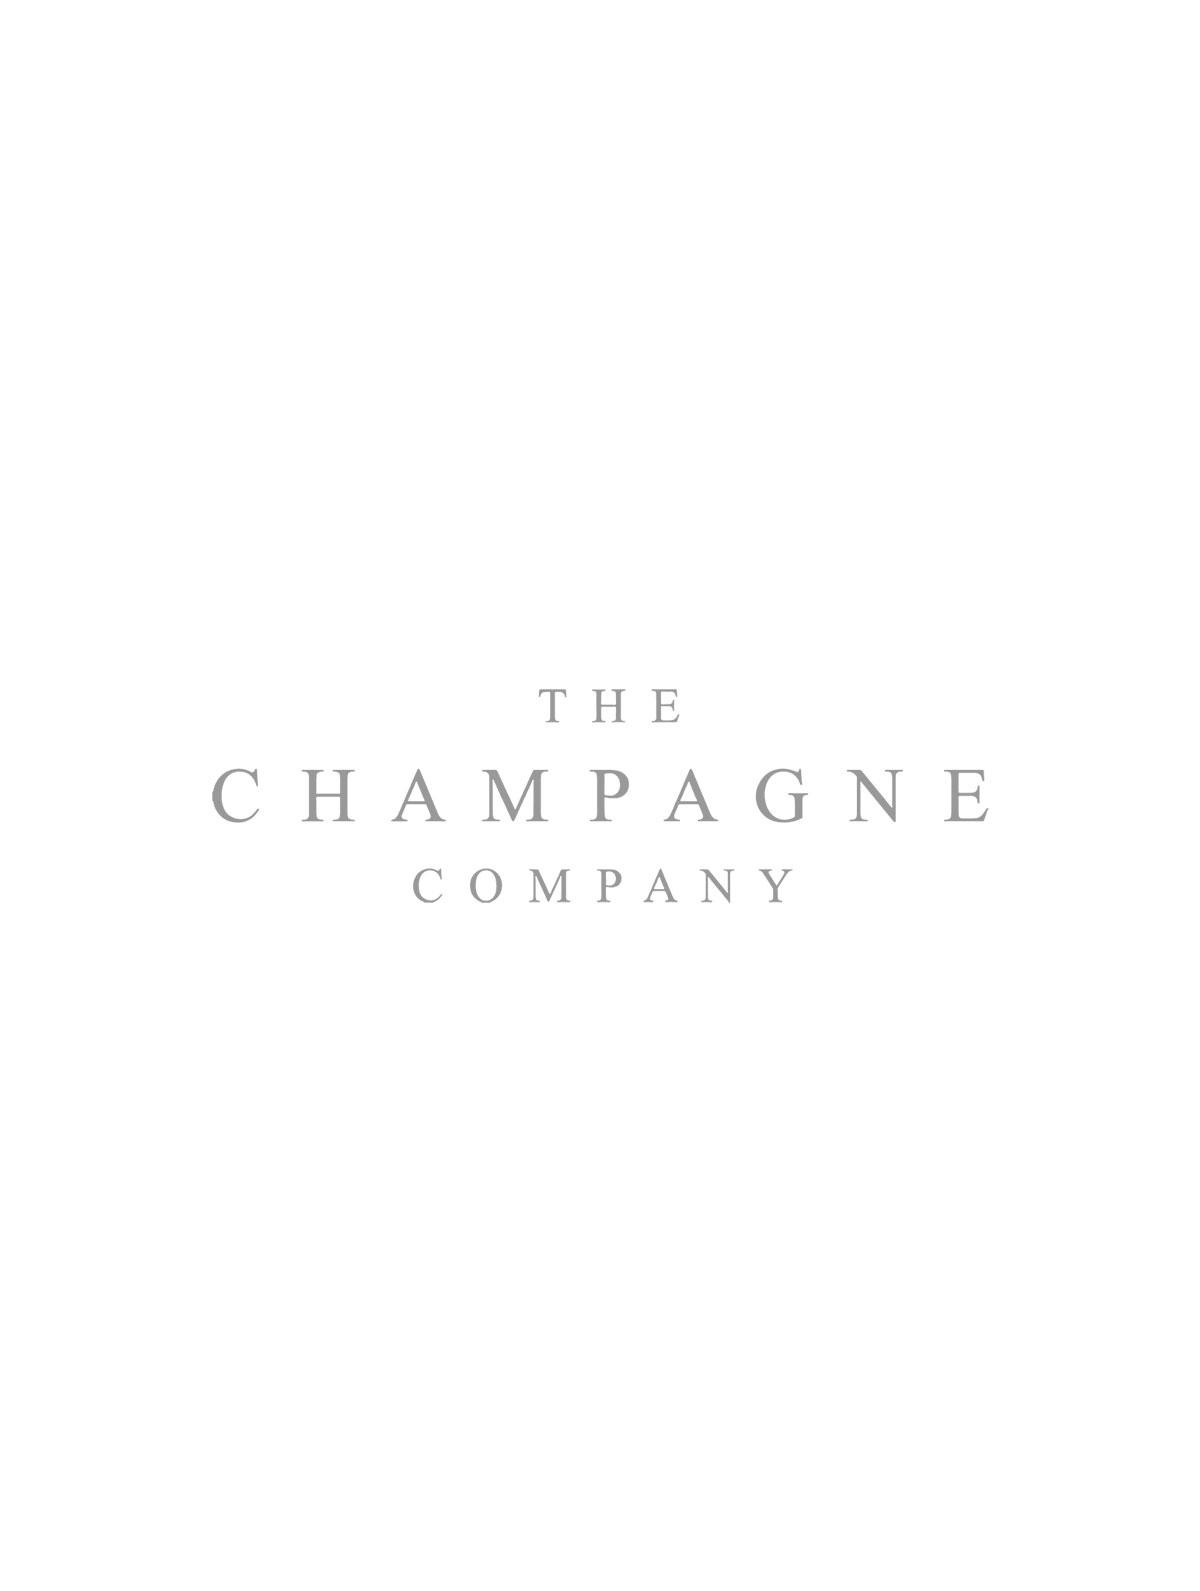 Laurent-Perrier La Cuvée NV Champagne Case Deal 6 x75cl